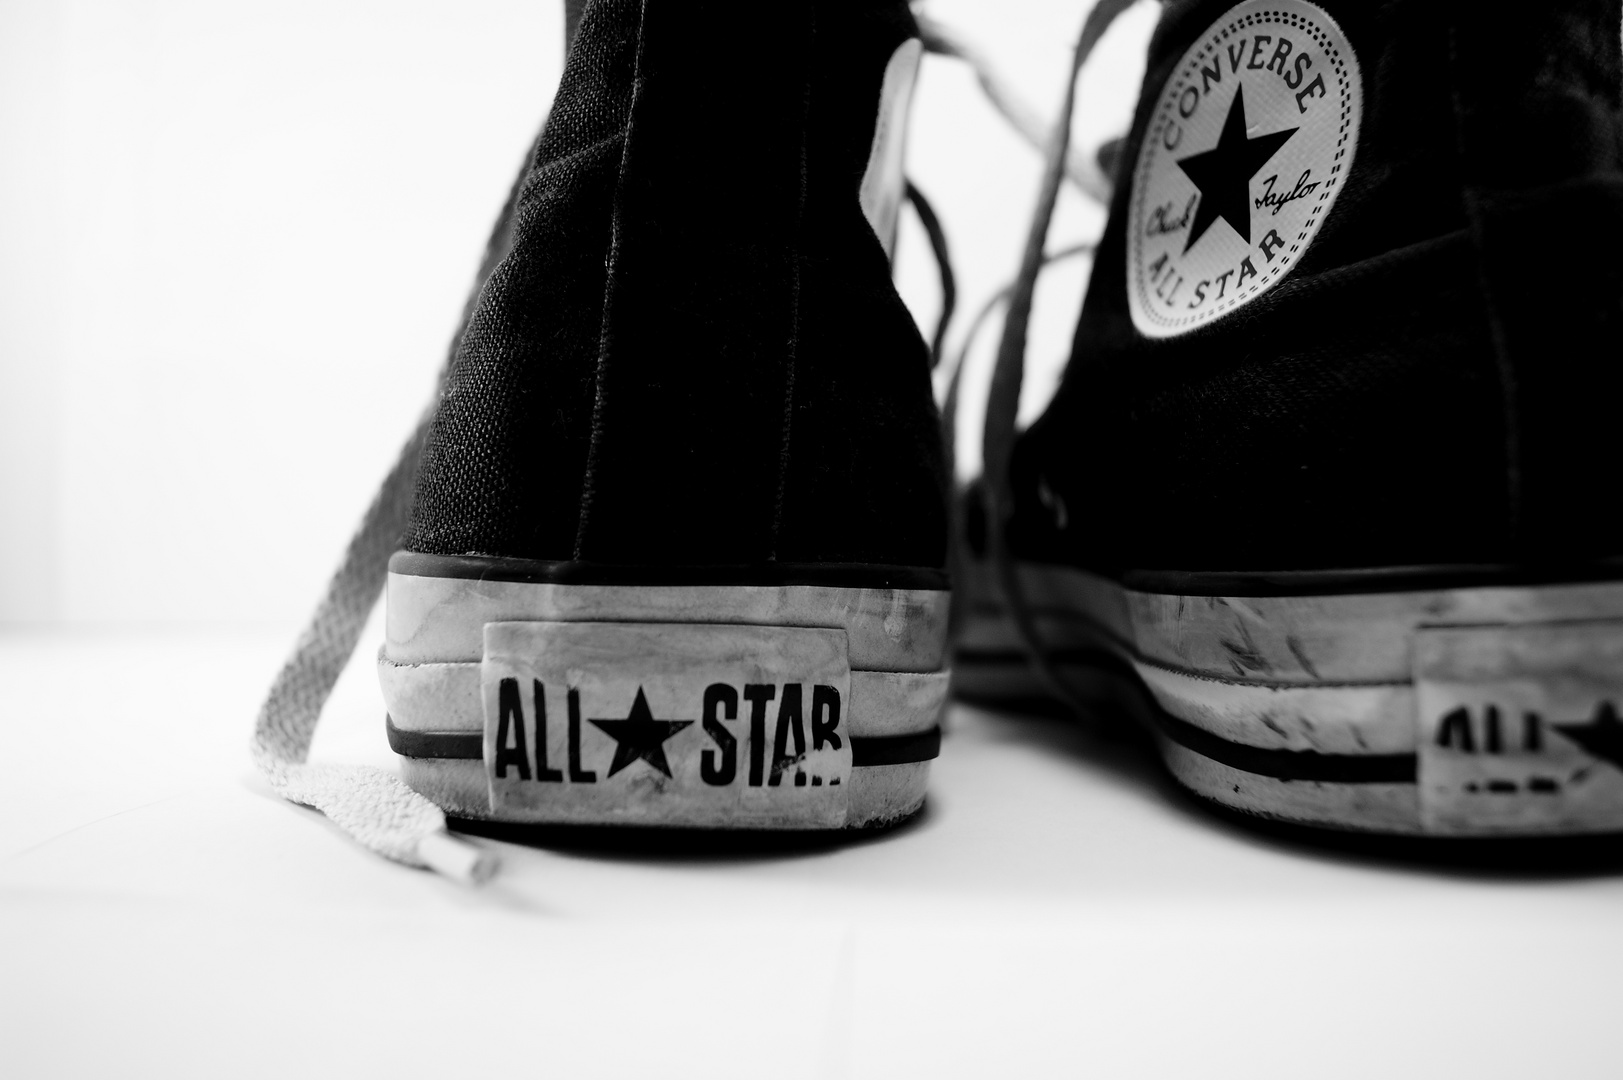 All Star, my Star ;)